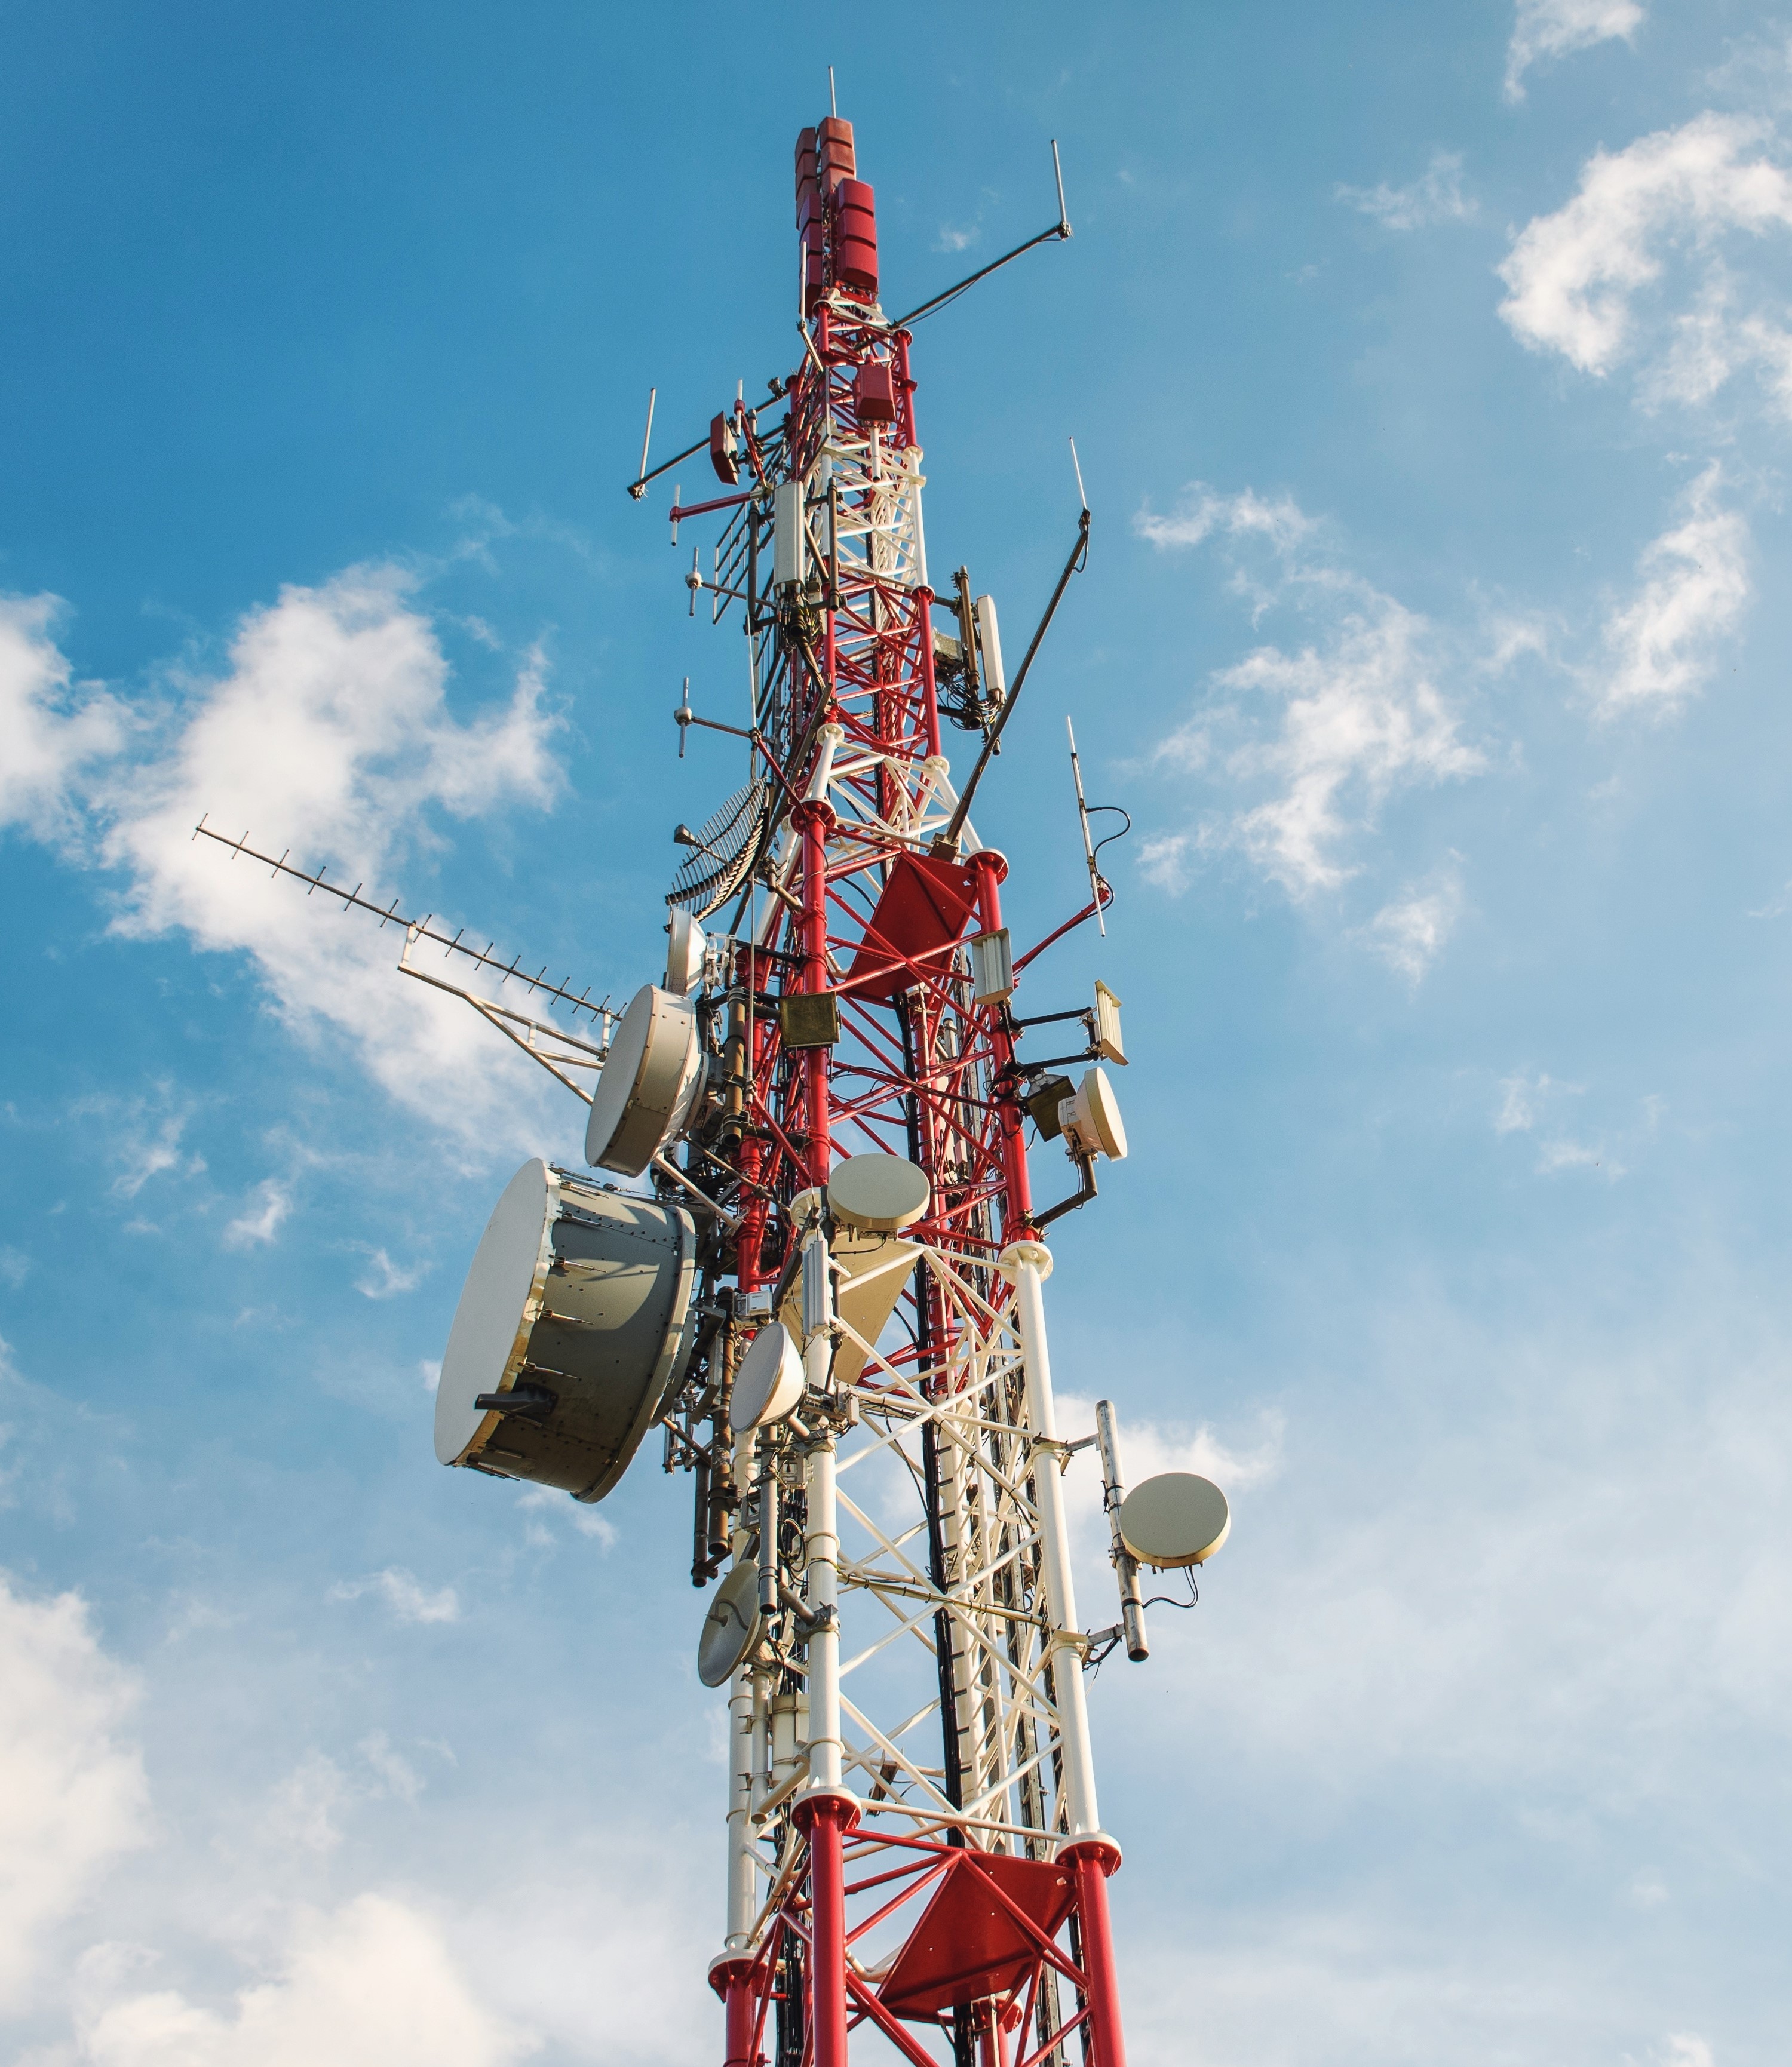 Foto de uma antena de telecom